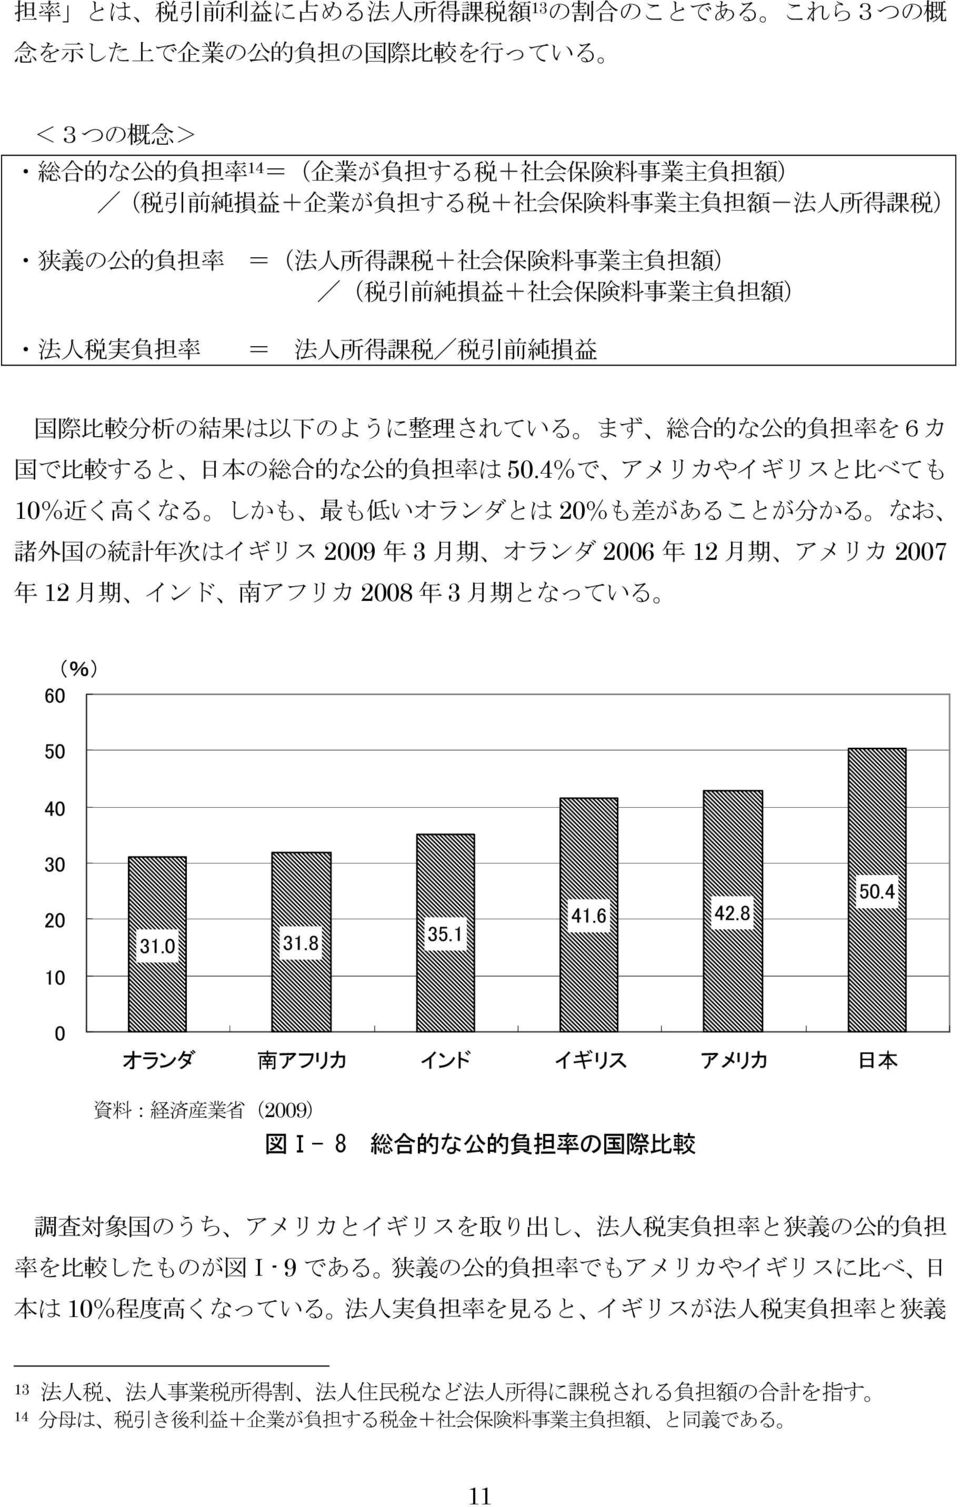 際 比 較 分 析 の 結 果 は 以 下 のように 整 理 されている まず 総 合 的 な 公 的 負 担 率 を6カ 国 で 比 較 すると 日 本 の 総 合 的 な 公 的 負 担 率 は 50.